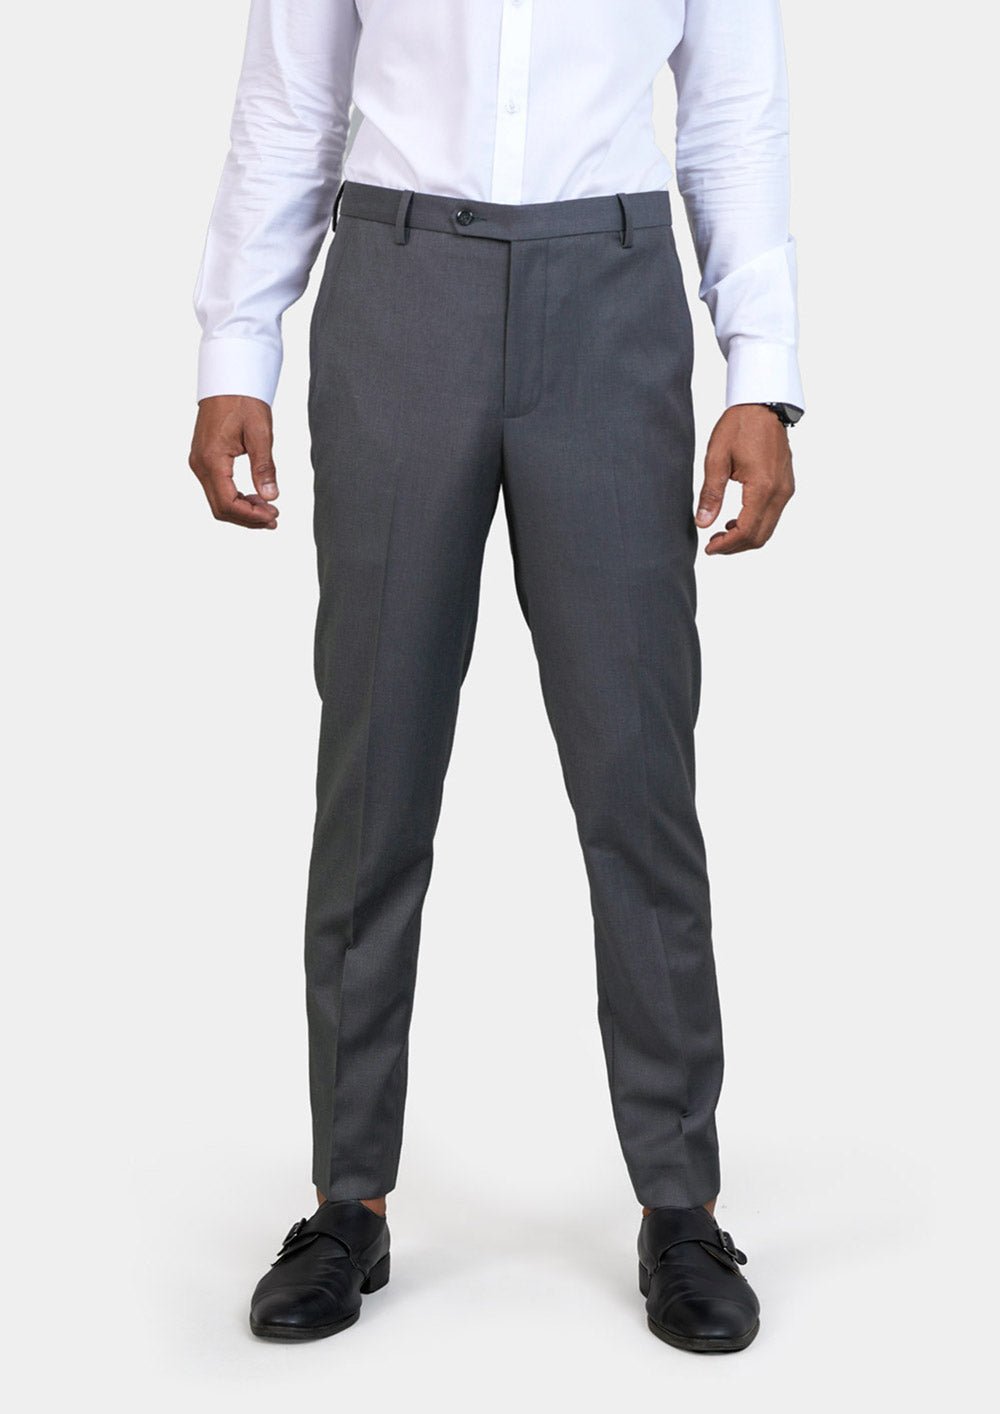 Grey Charcoal Crosshatch Pants - SARTORO